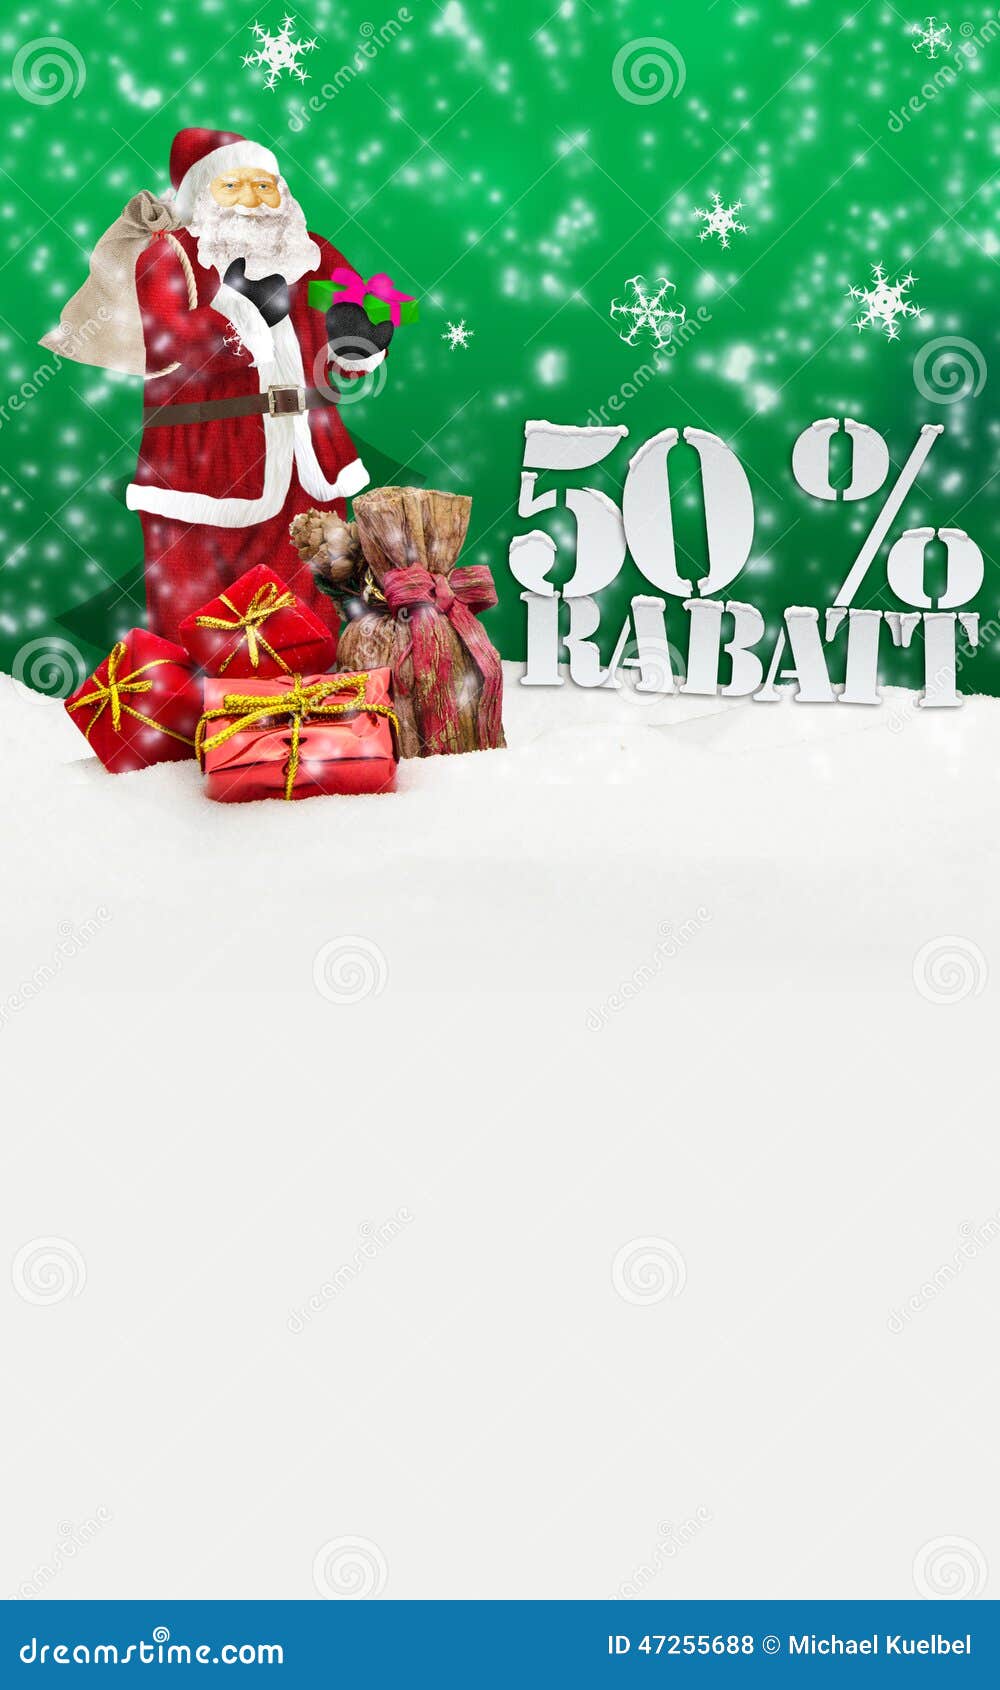 Babbo Natale 50.Il Babbo Natale Buon Natale Uno Sconto Di 50 Per Cento Fotografia Stock Immagine Di Copia Sconto 47255688